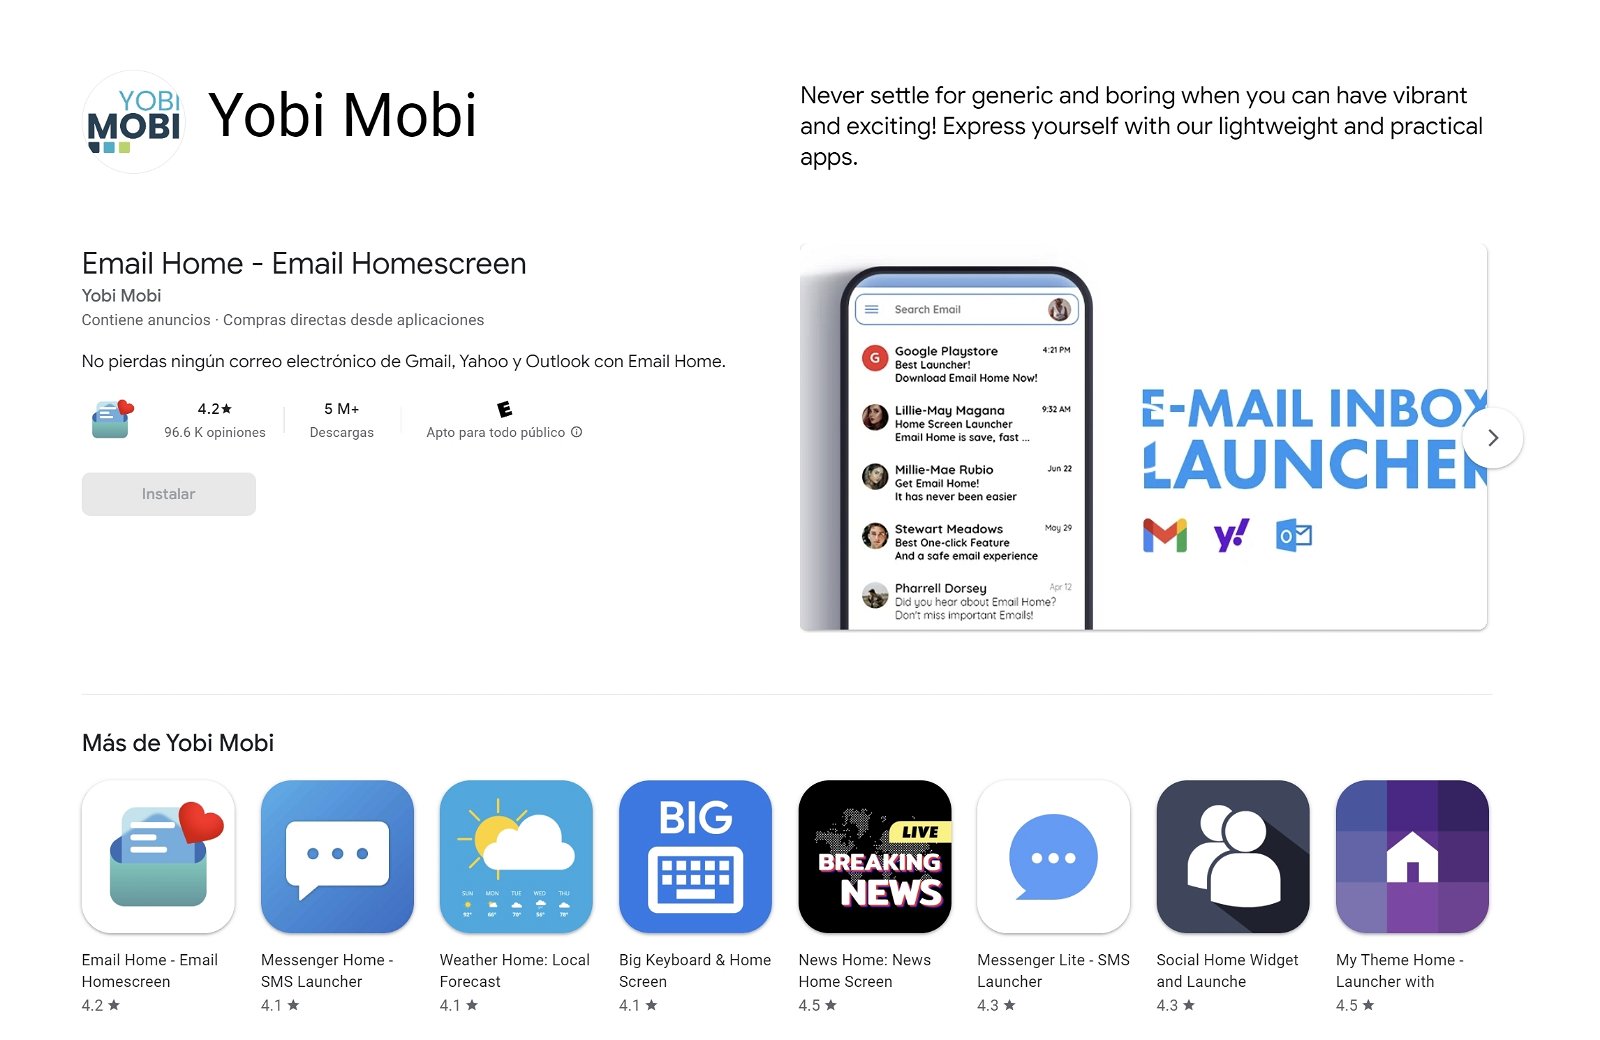 Pagina del desarrollador Yobi Mobi en Google Play